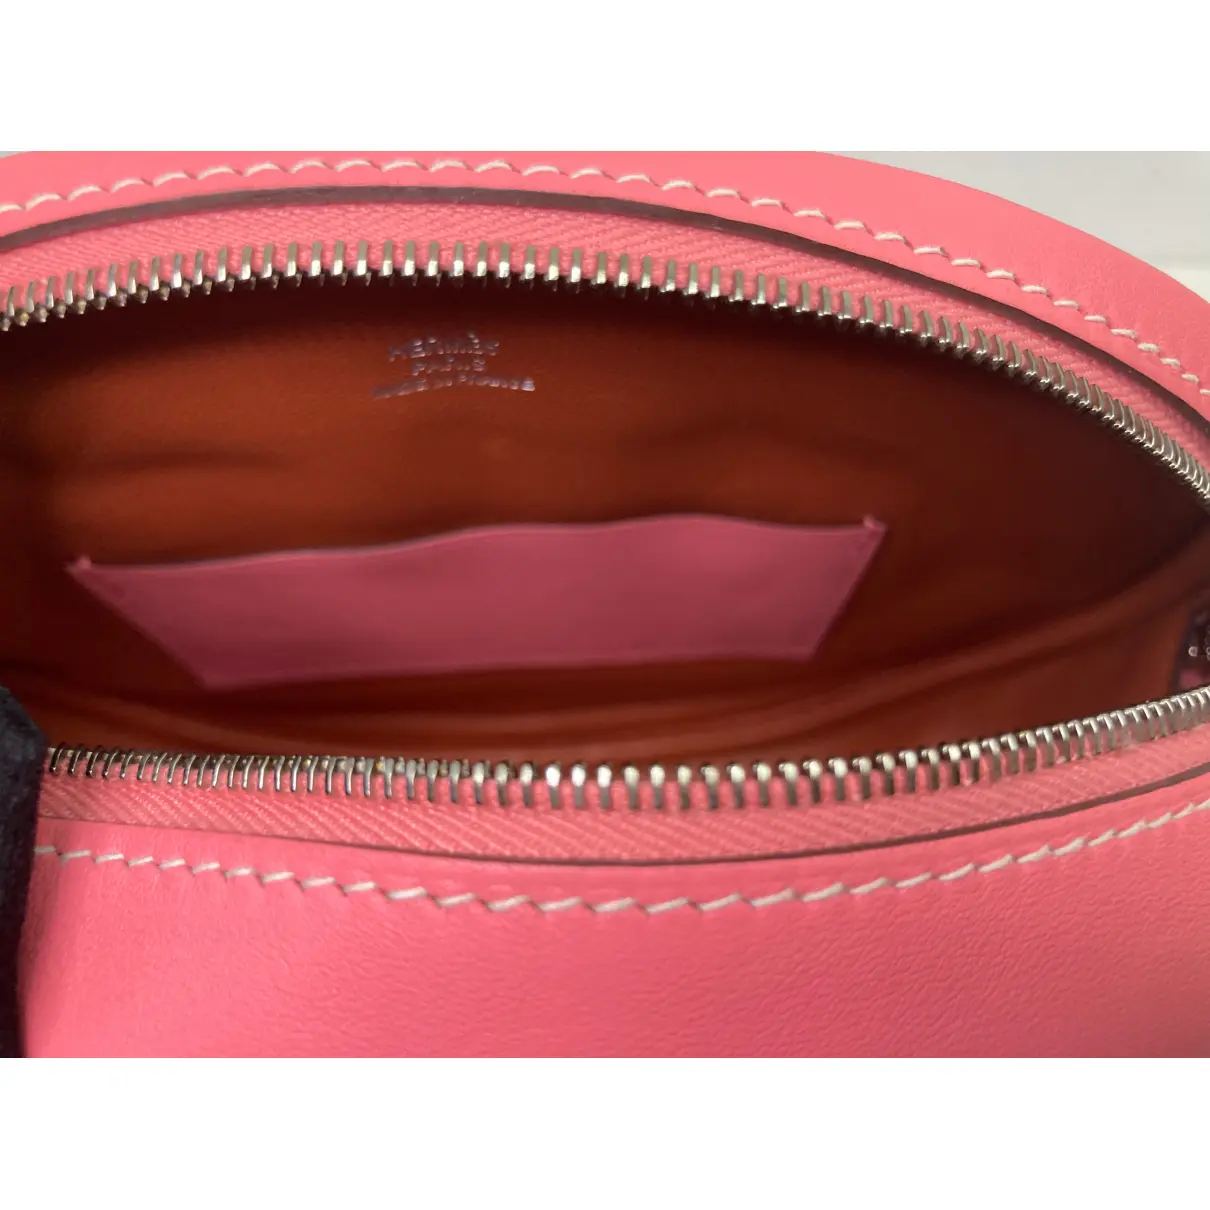 In-The-Loop leather crossbody bag Hermès